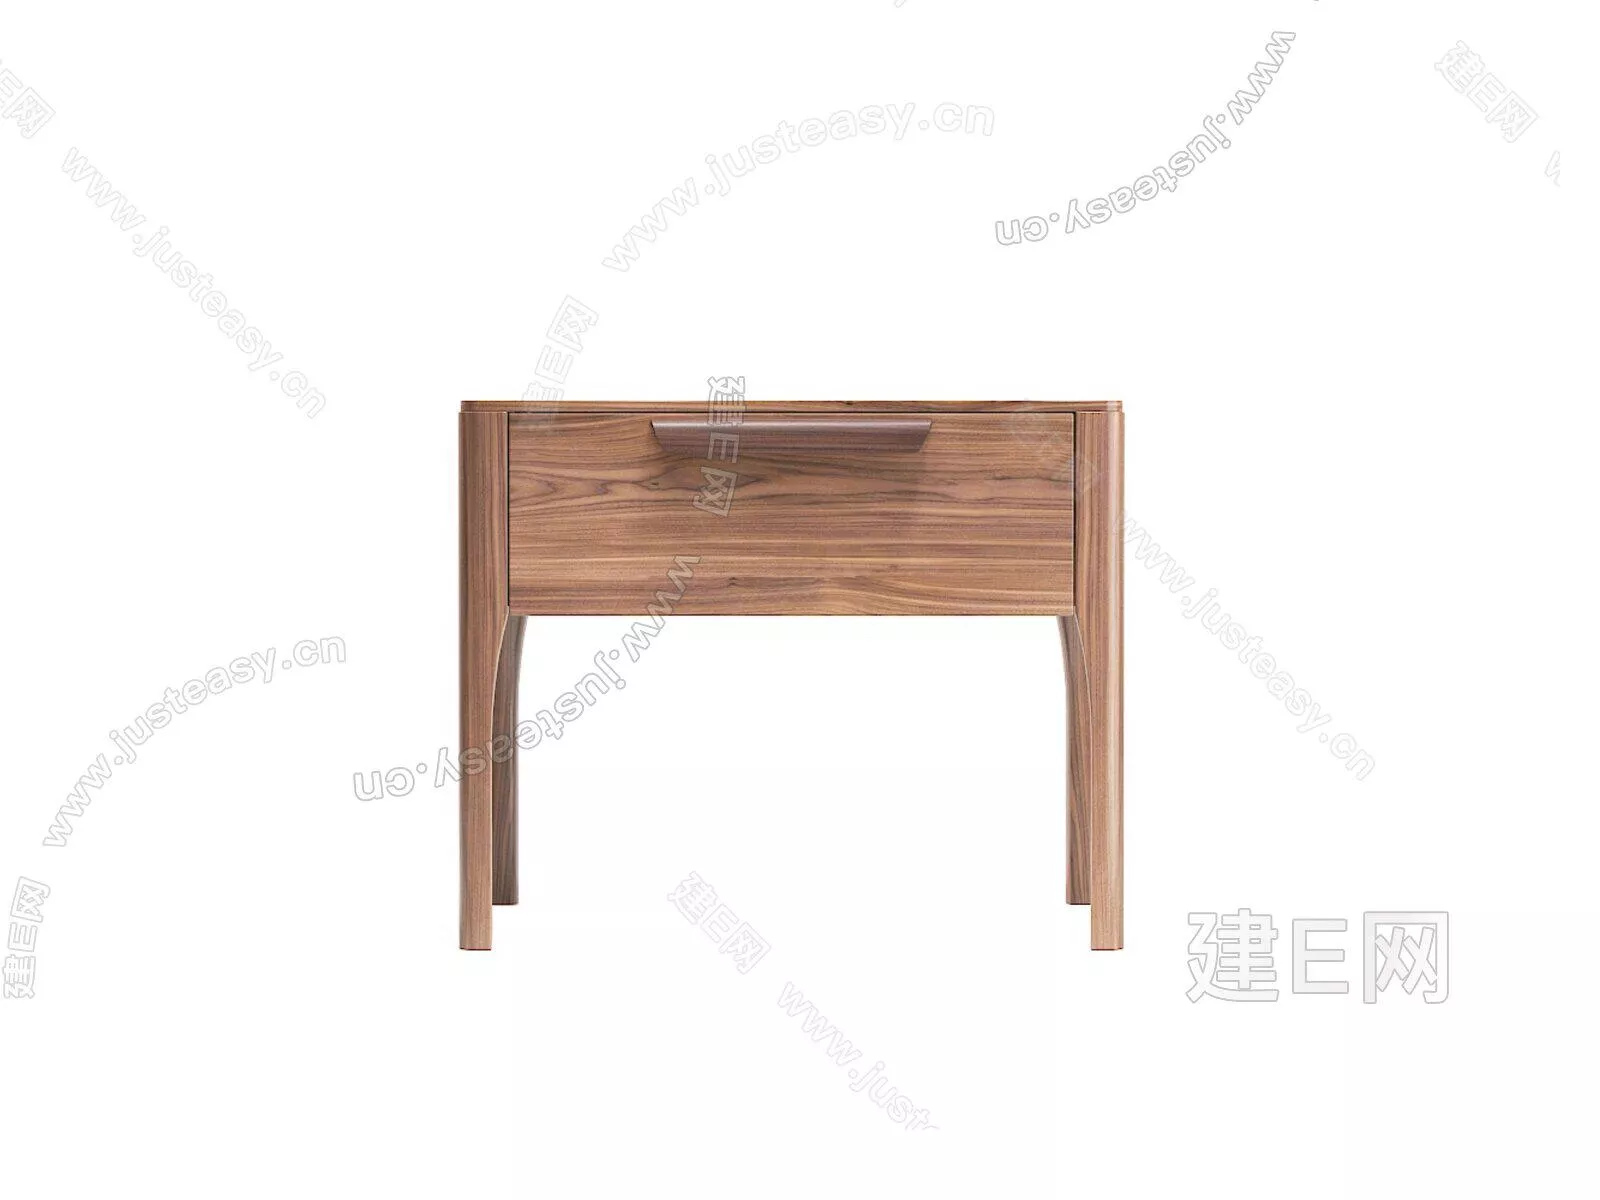 NORDIC BEDSIDE TABLE - SKETCHUP 3D MODEL - ENSCAPE - 104941810